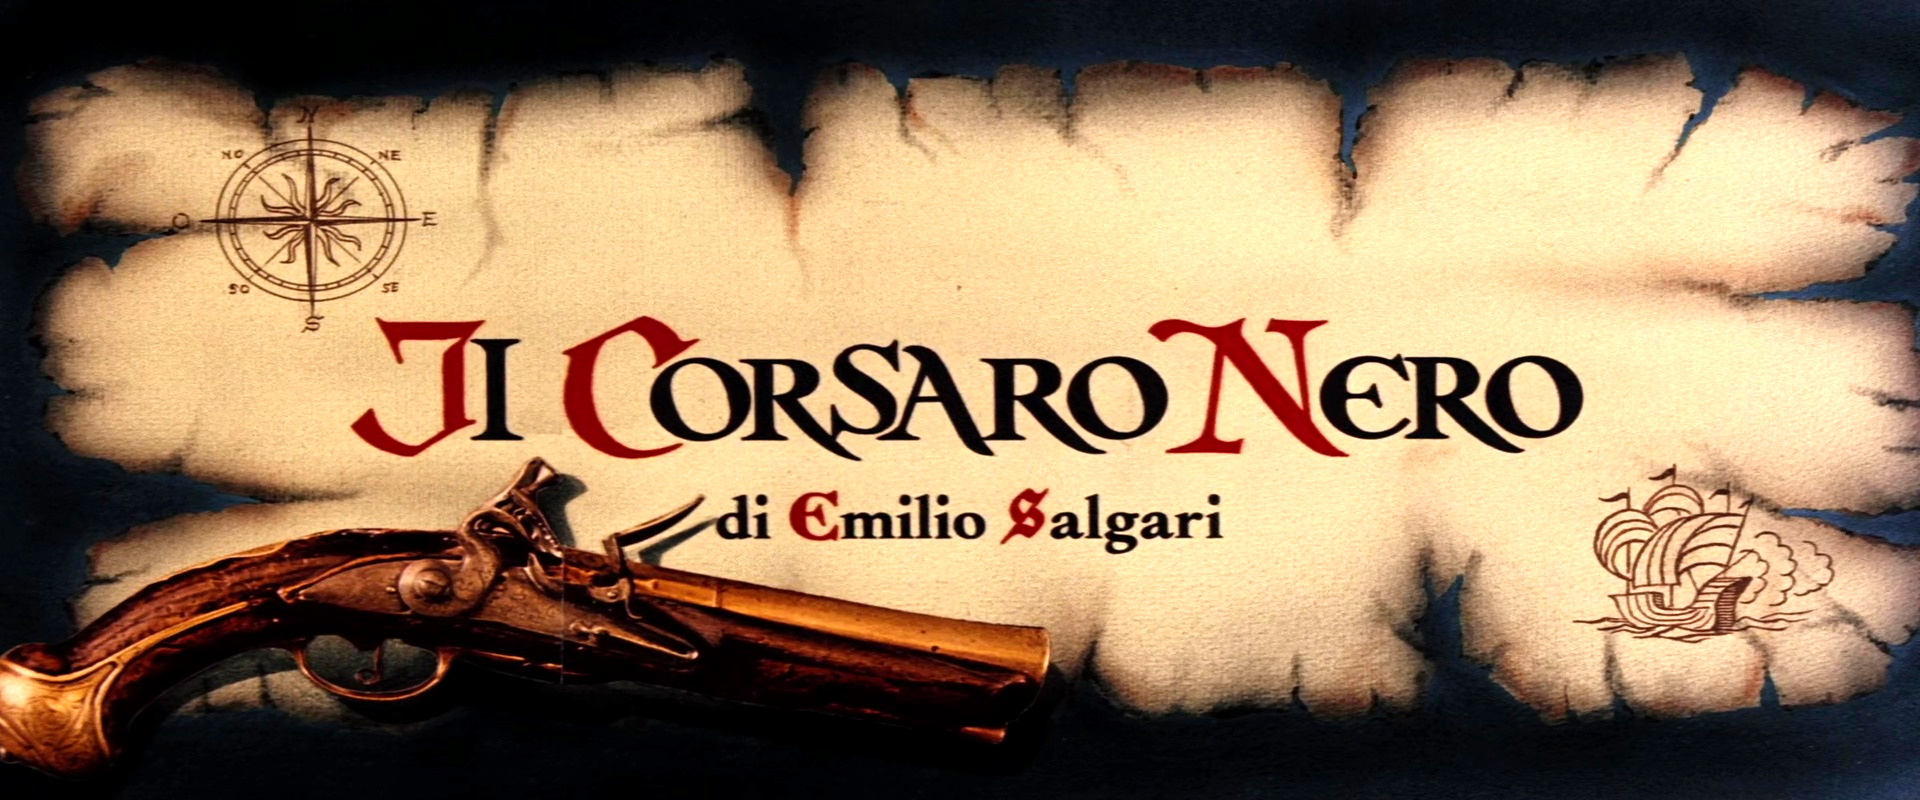 Il Corsaro Nero (1976) title.jpg